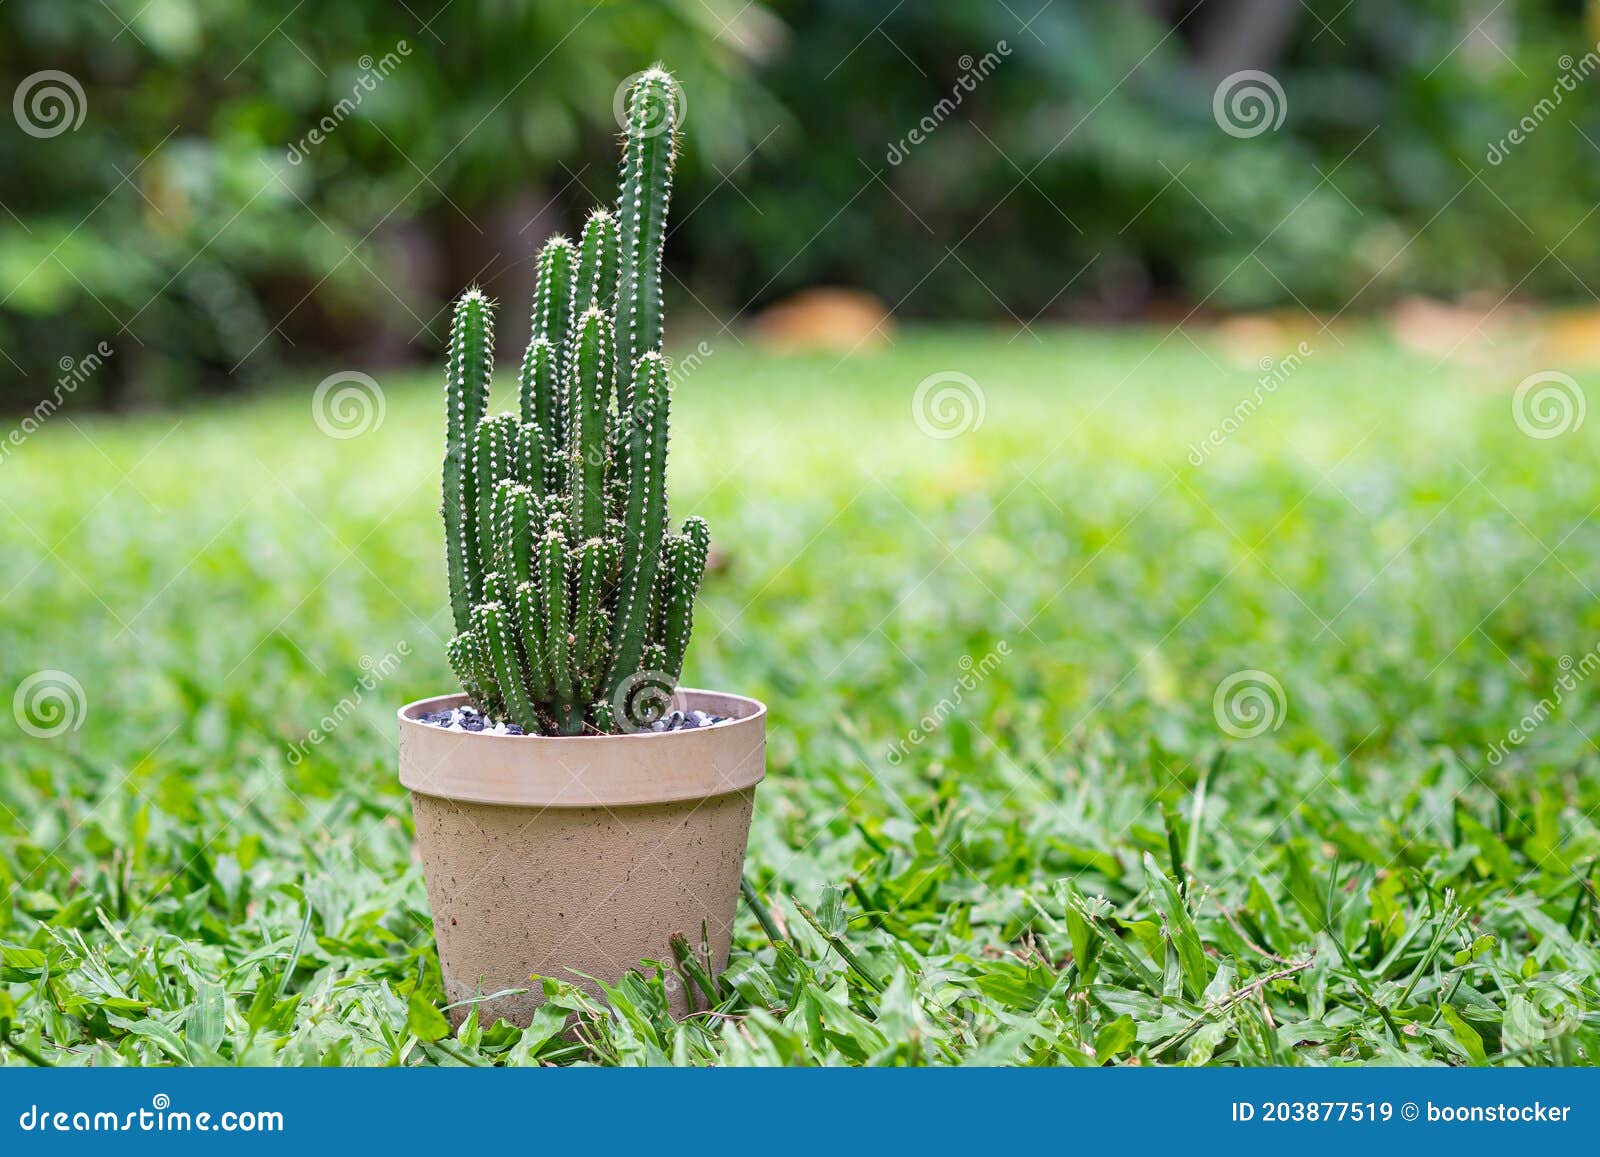 duda formato preparar Plantar Un Cactus En Una Maceta Colocada Sobre El Fondo De La Hierba.  Espacio Para Texto Imagen de archivo - Imagen de cubo, cactos: 203877519